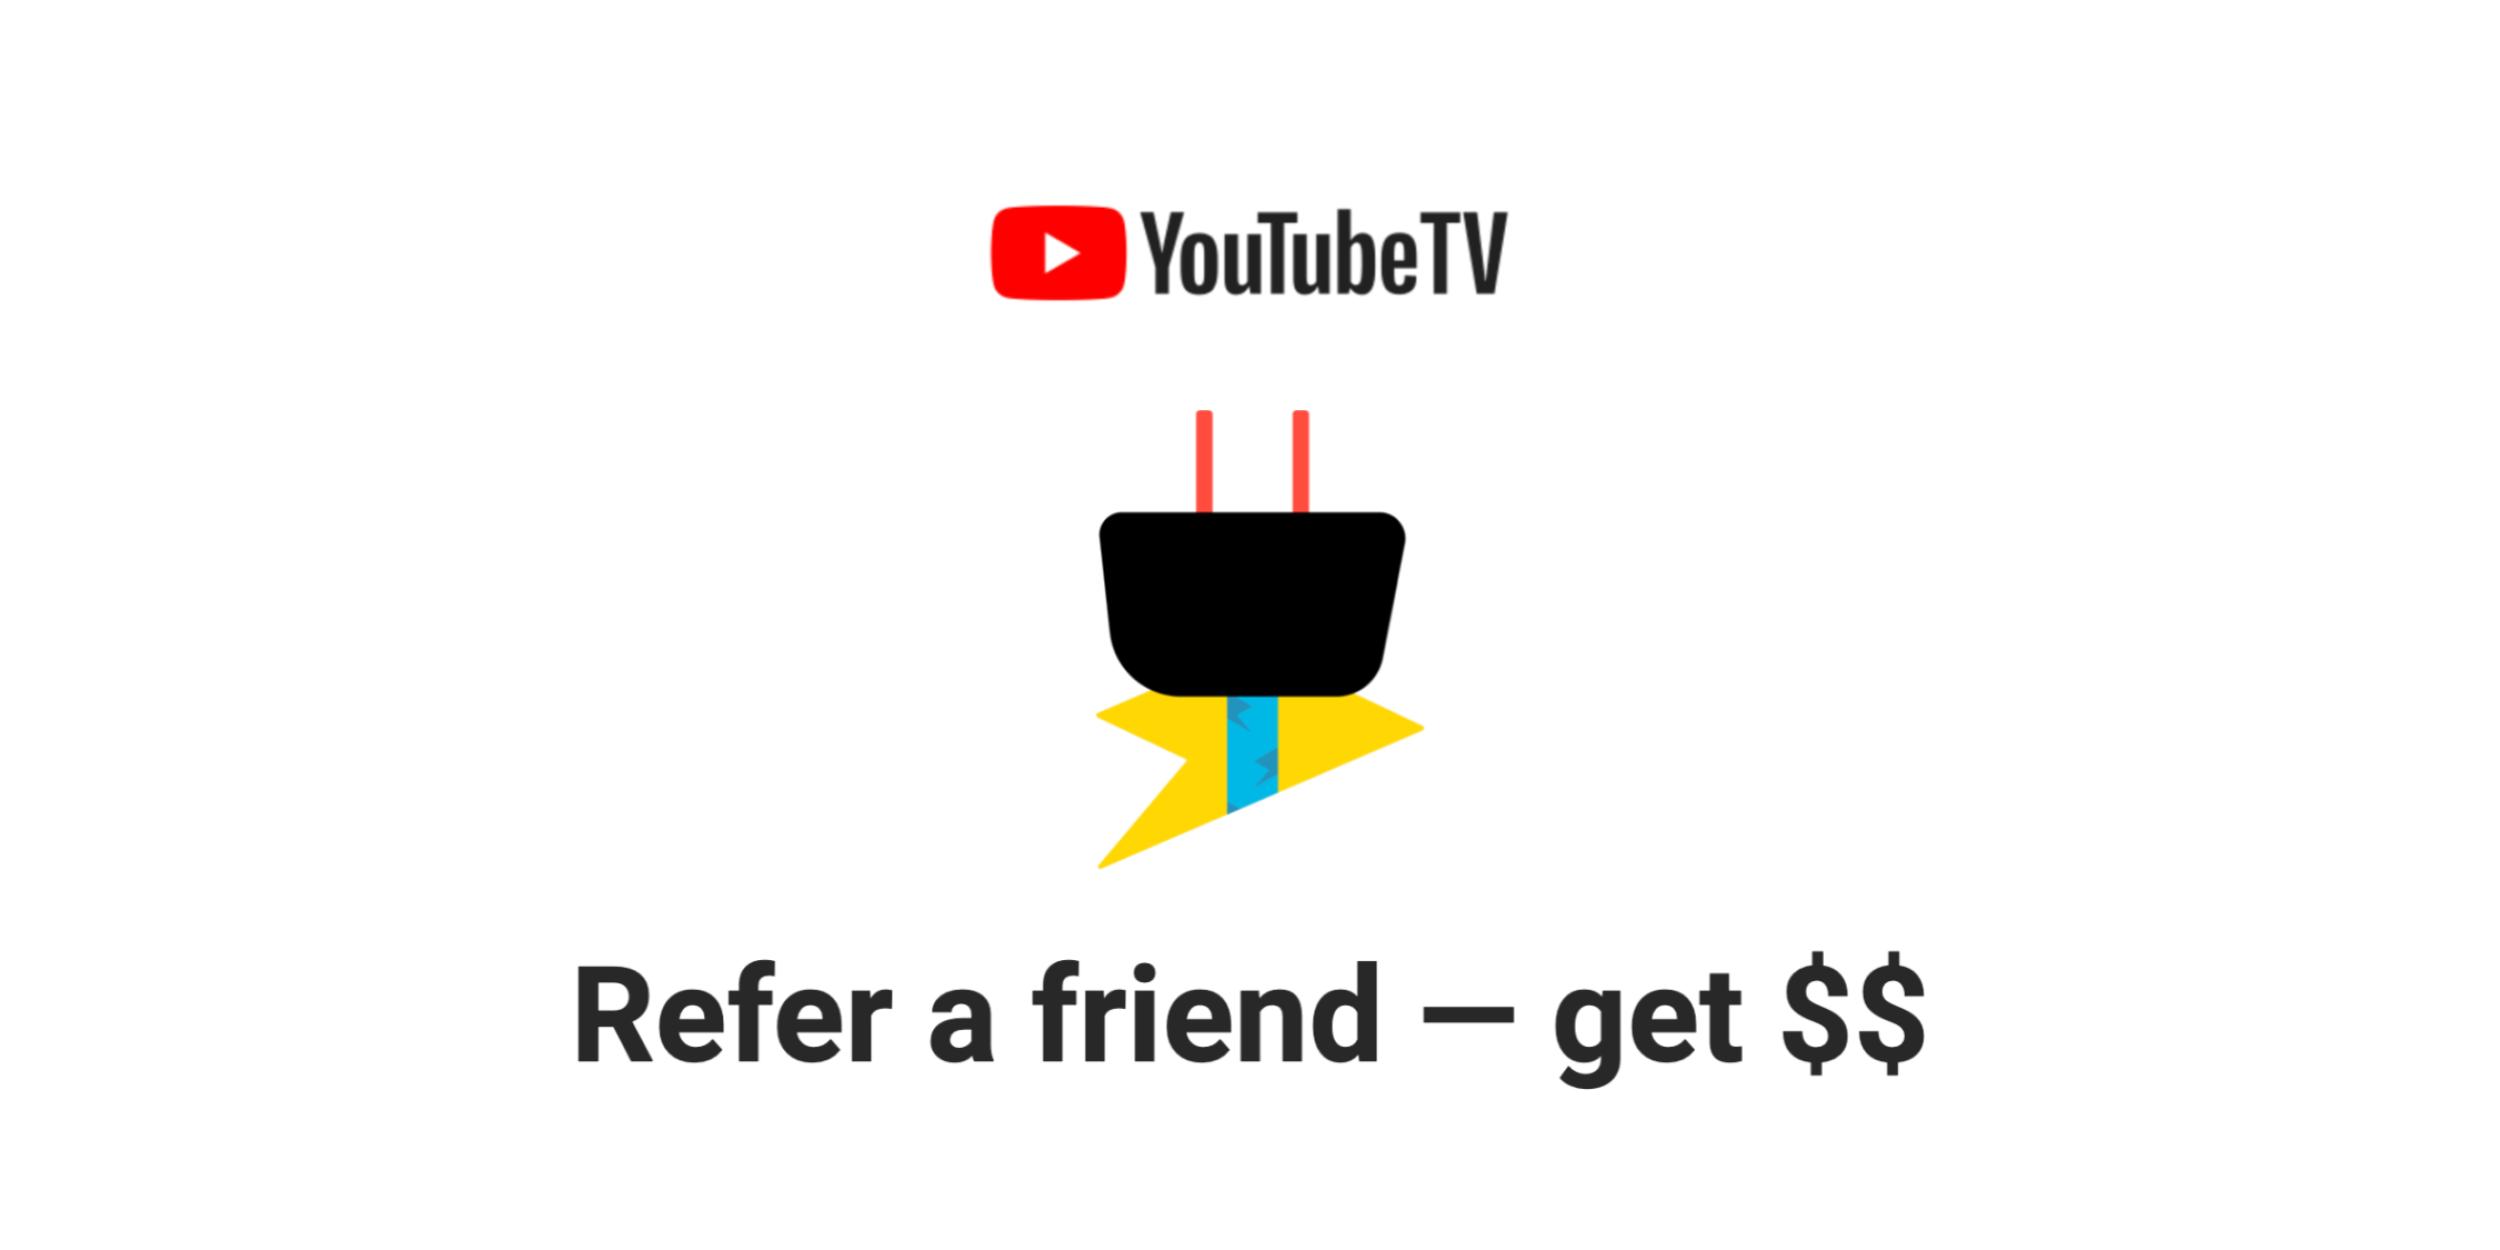 ¿Puedo recomendar a alguien a YouTube TV?